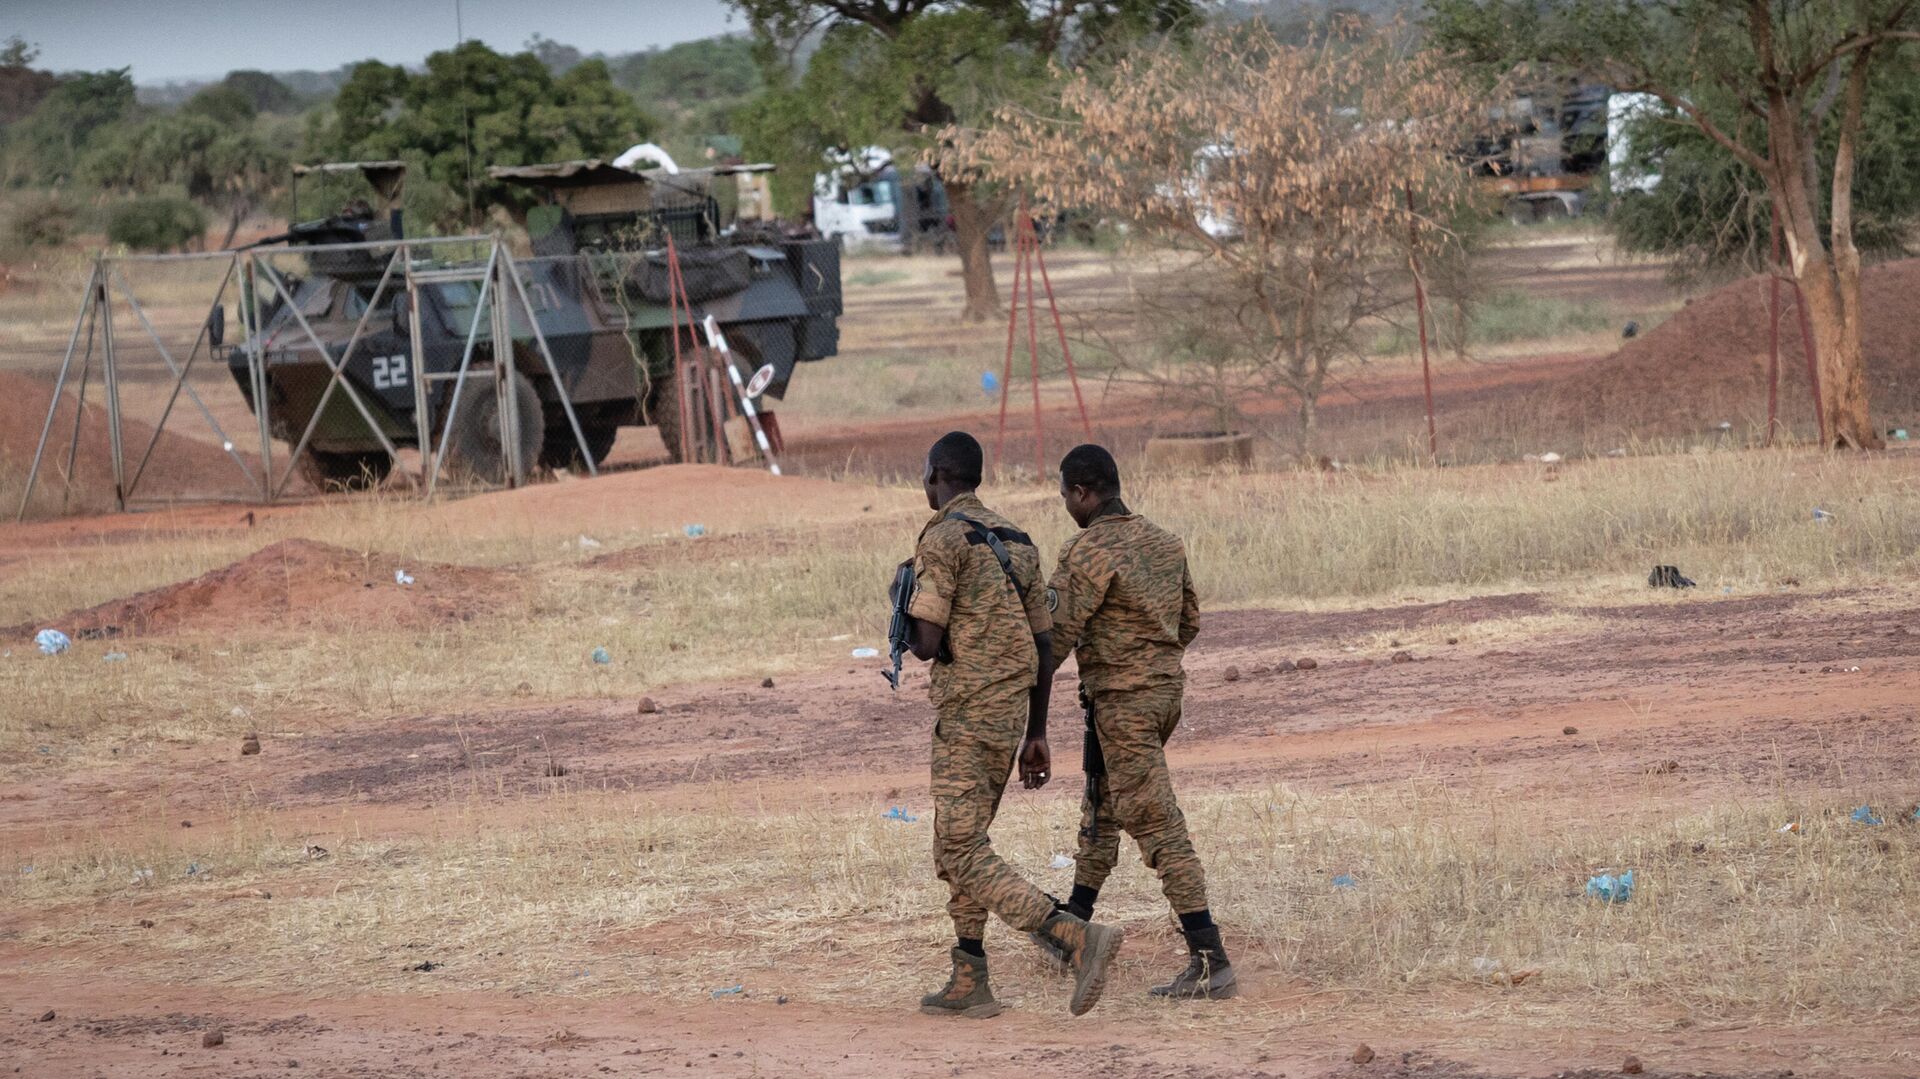 Des militaires burkinabè patrouillent près d'un véhicule blindé français stationné à Kaya, capitale de la région du centre-nord du Burkina Faso, après que des personnes ont manifesté pour s'opposer au passage d'un convoi logistique français vers le Niger voisin, le 20 novembre 2021 - Sputnik Afrique, 1920, 23.11.2021